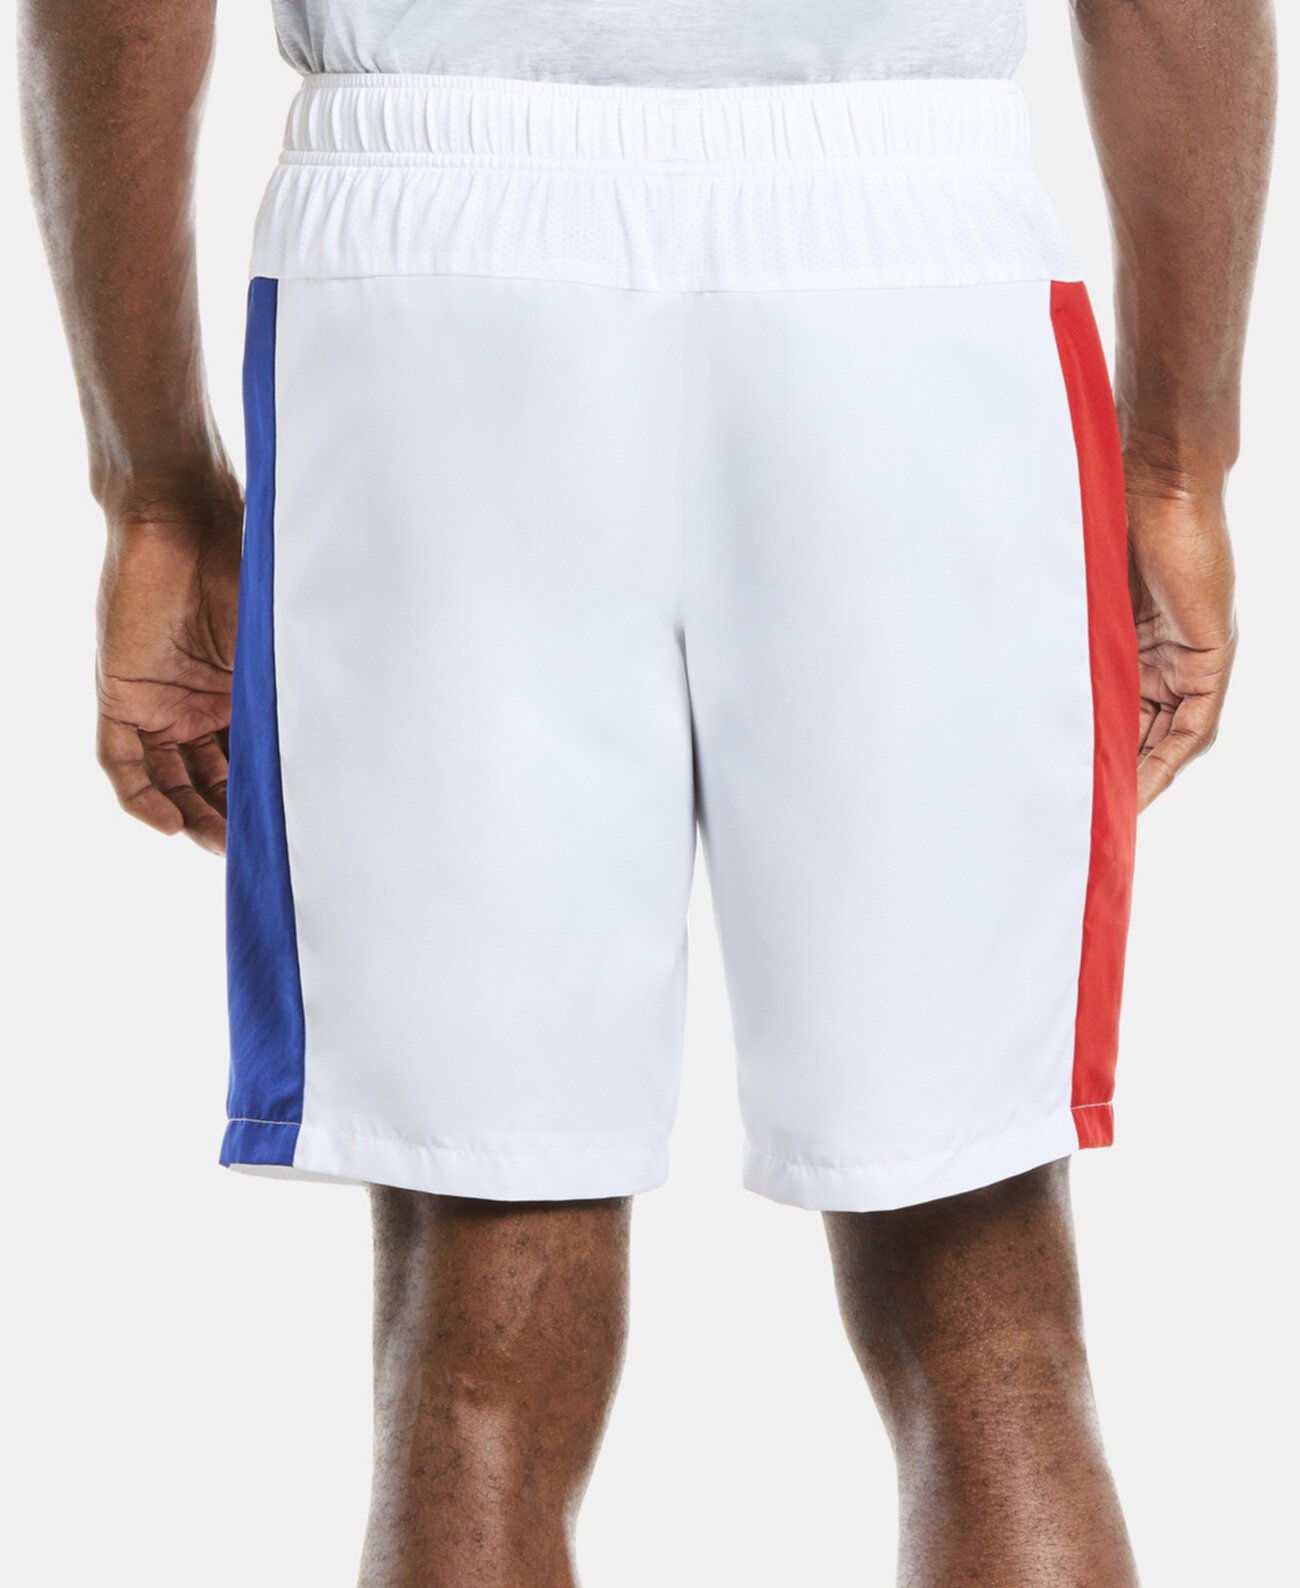 Мужские теннисные шорты SPORT с цветными блоками на сетчатой подкладке и боковыми полосками Lacoste